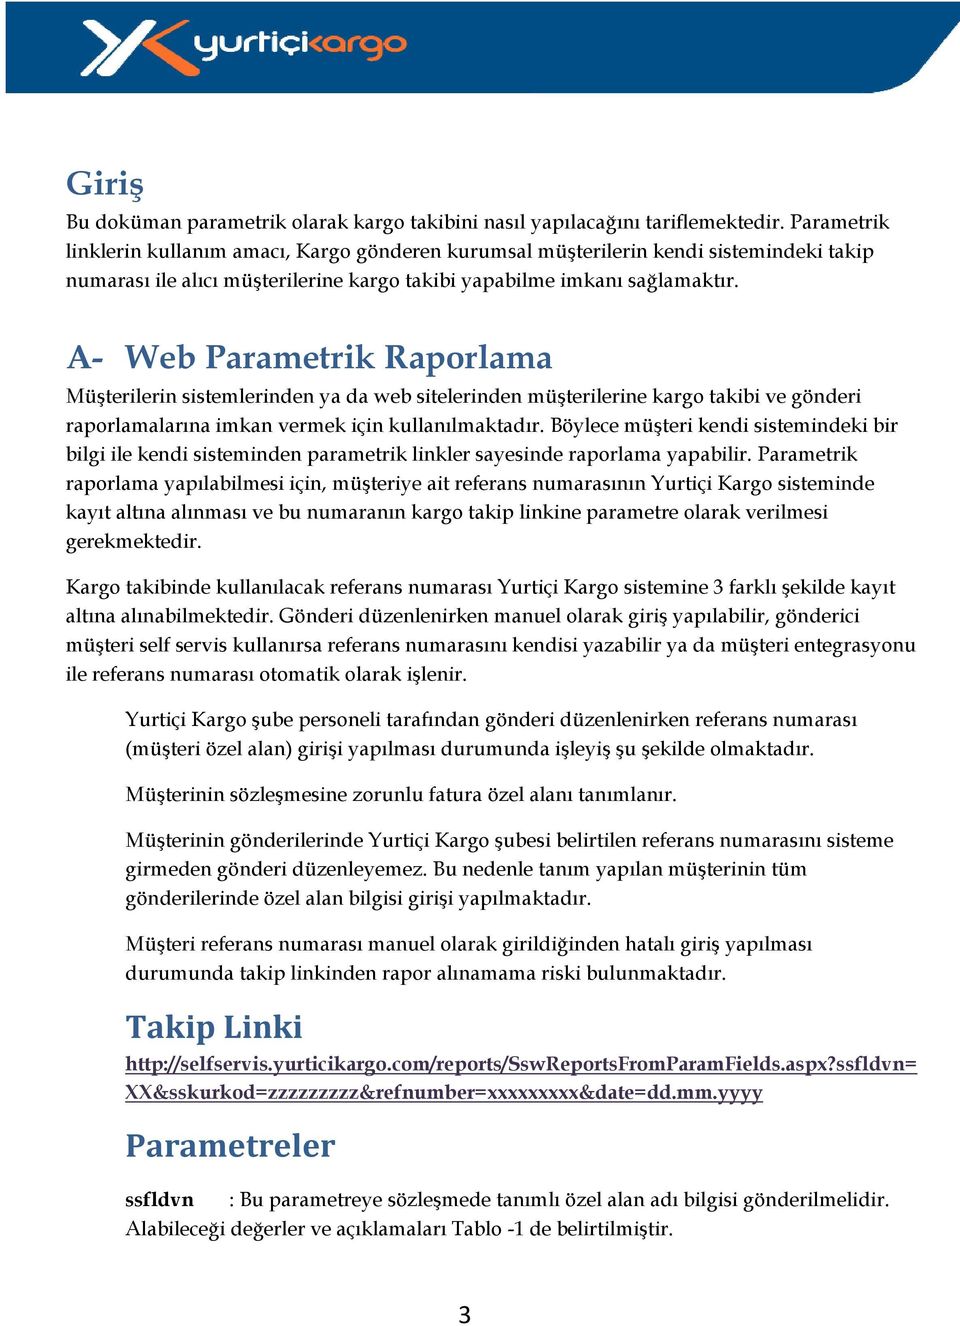 A- Web Parametrik Raporlama Müşterilerin sistemlerinden ya da web sitelerinden müşterilerine kargo takibi ve gönderi raporlamalarına imkan vermek için kullanılmaktadır.